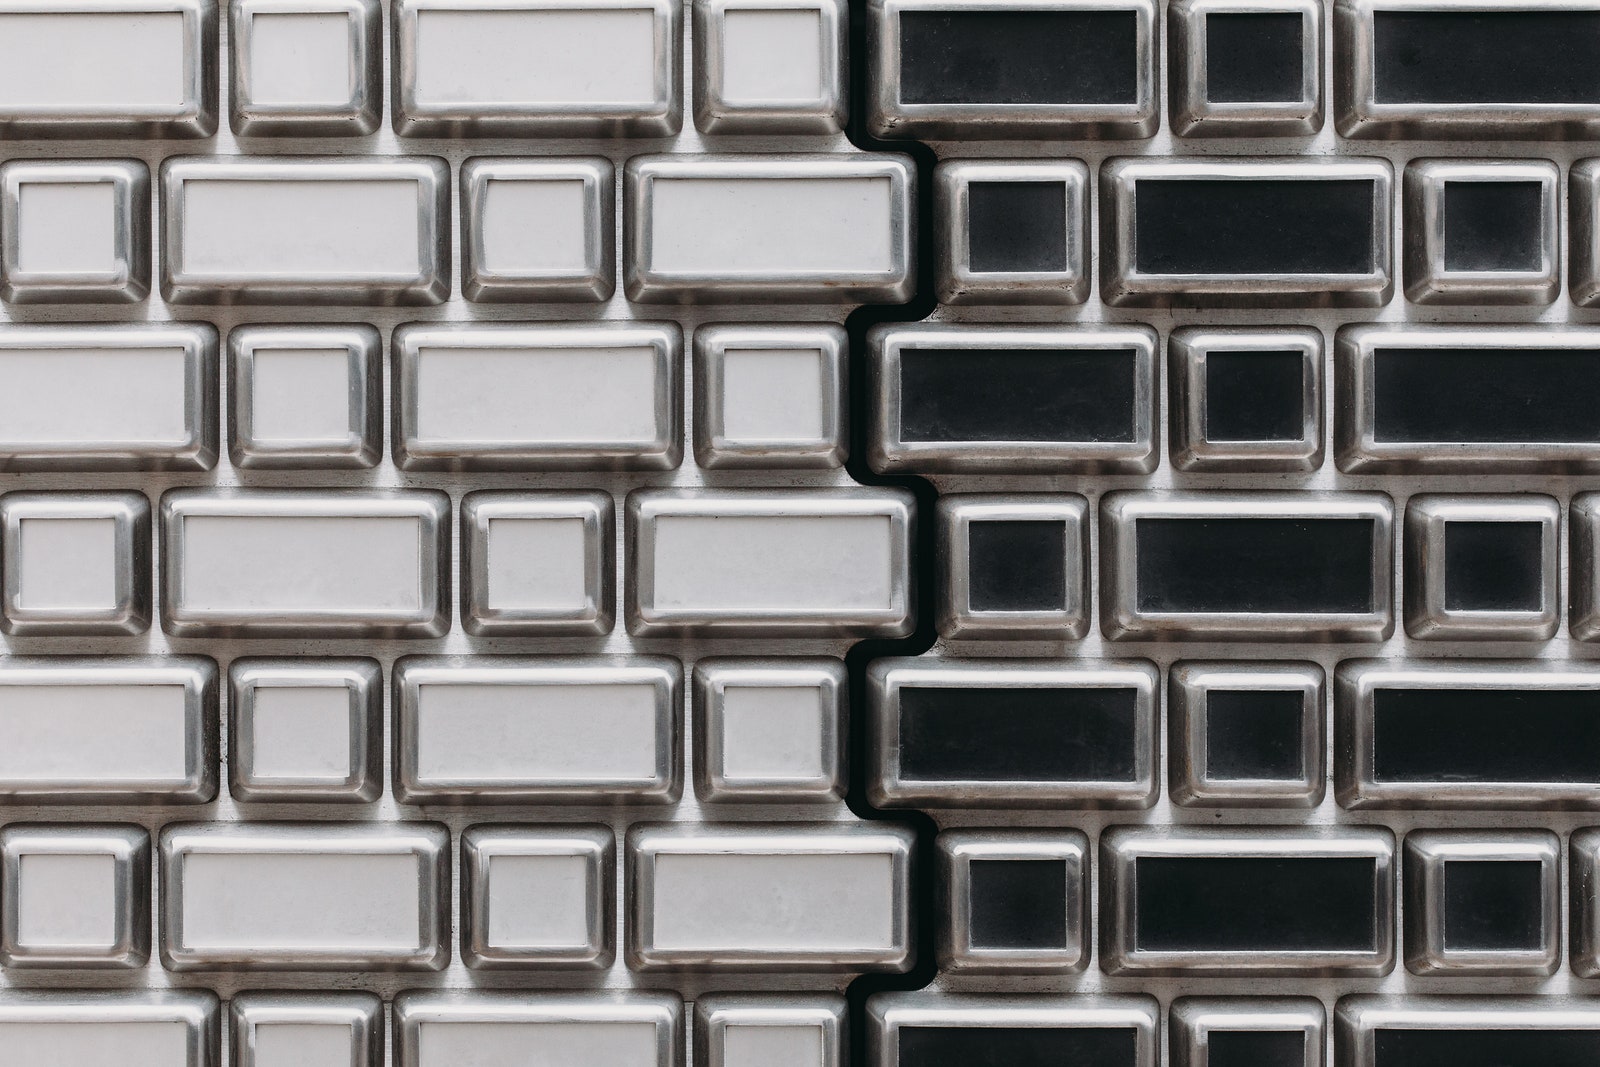 Пиксельный фасад магазина Louis Vuitton по проекту UNStudio